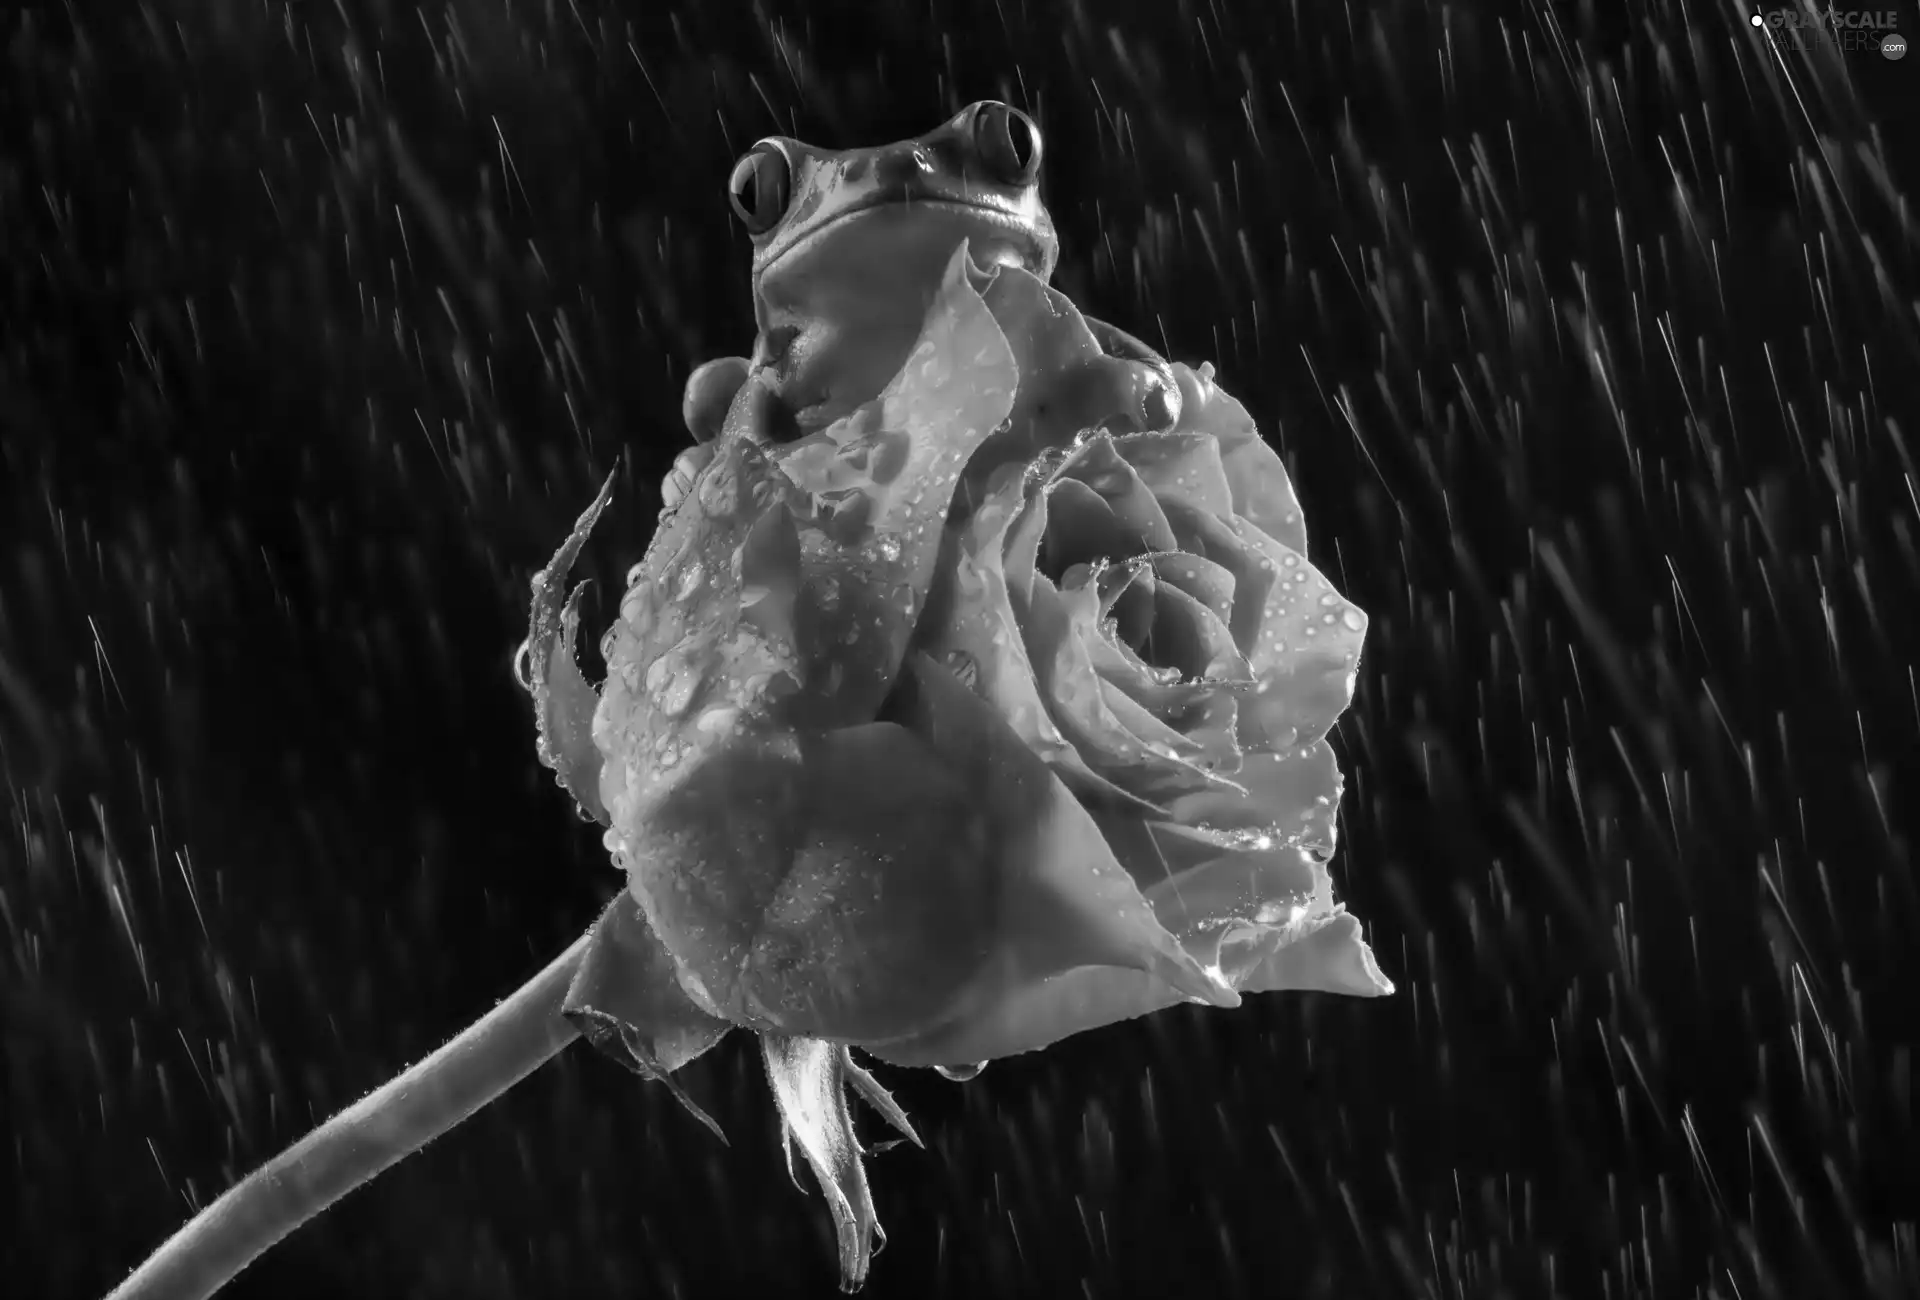 Rain, strange frog, rose